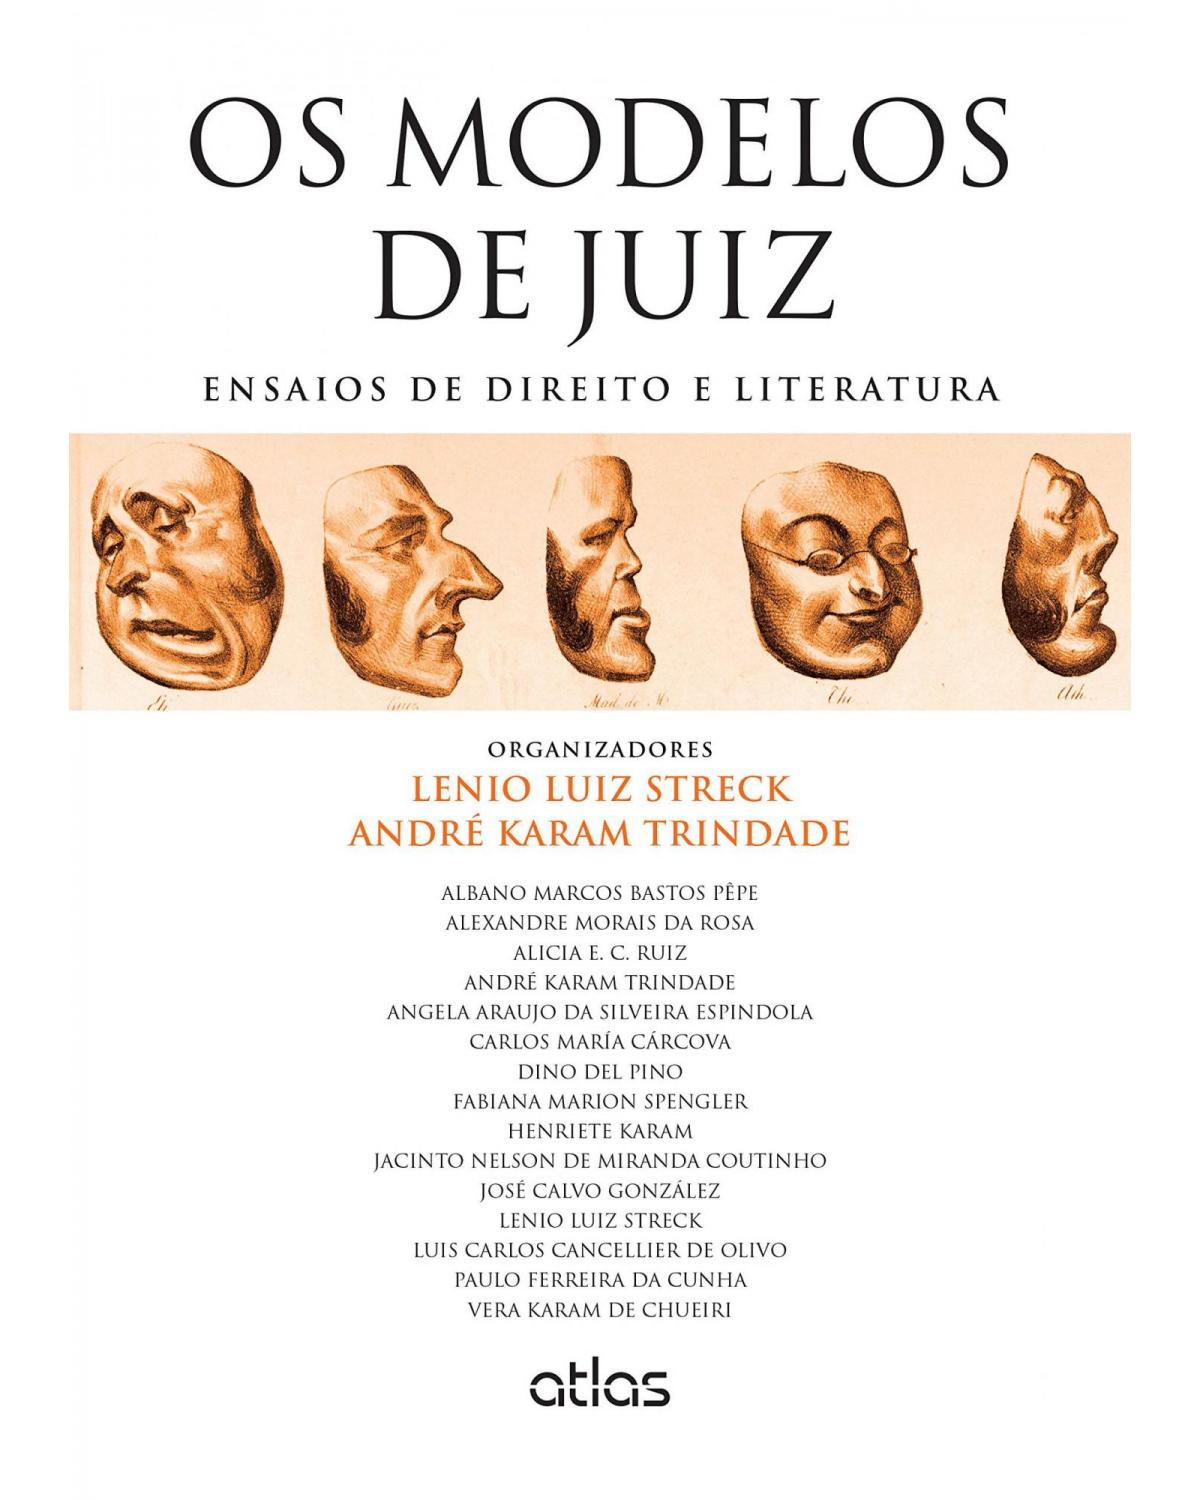 Os modelos de juiz - Ensaios de direito e literatura - 1ª Edição | 2015